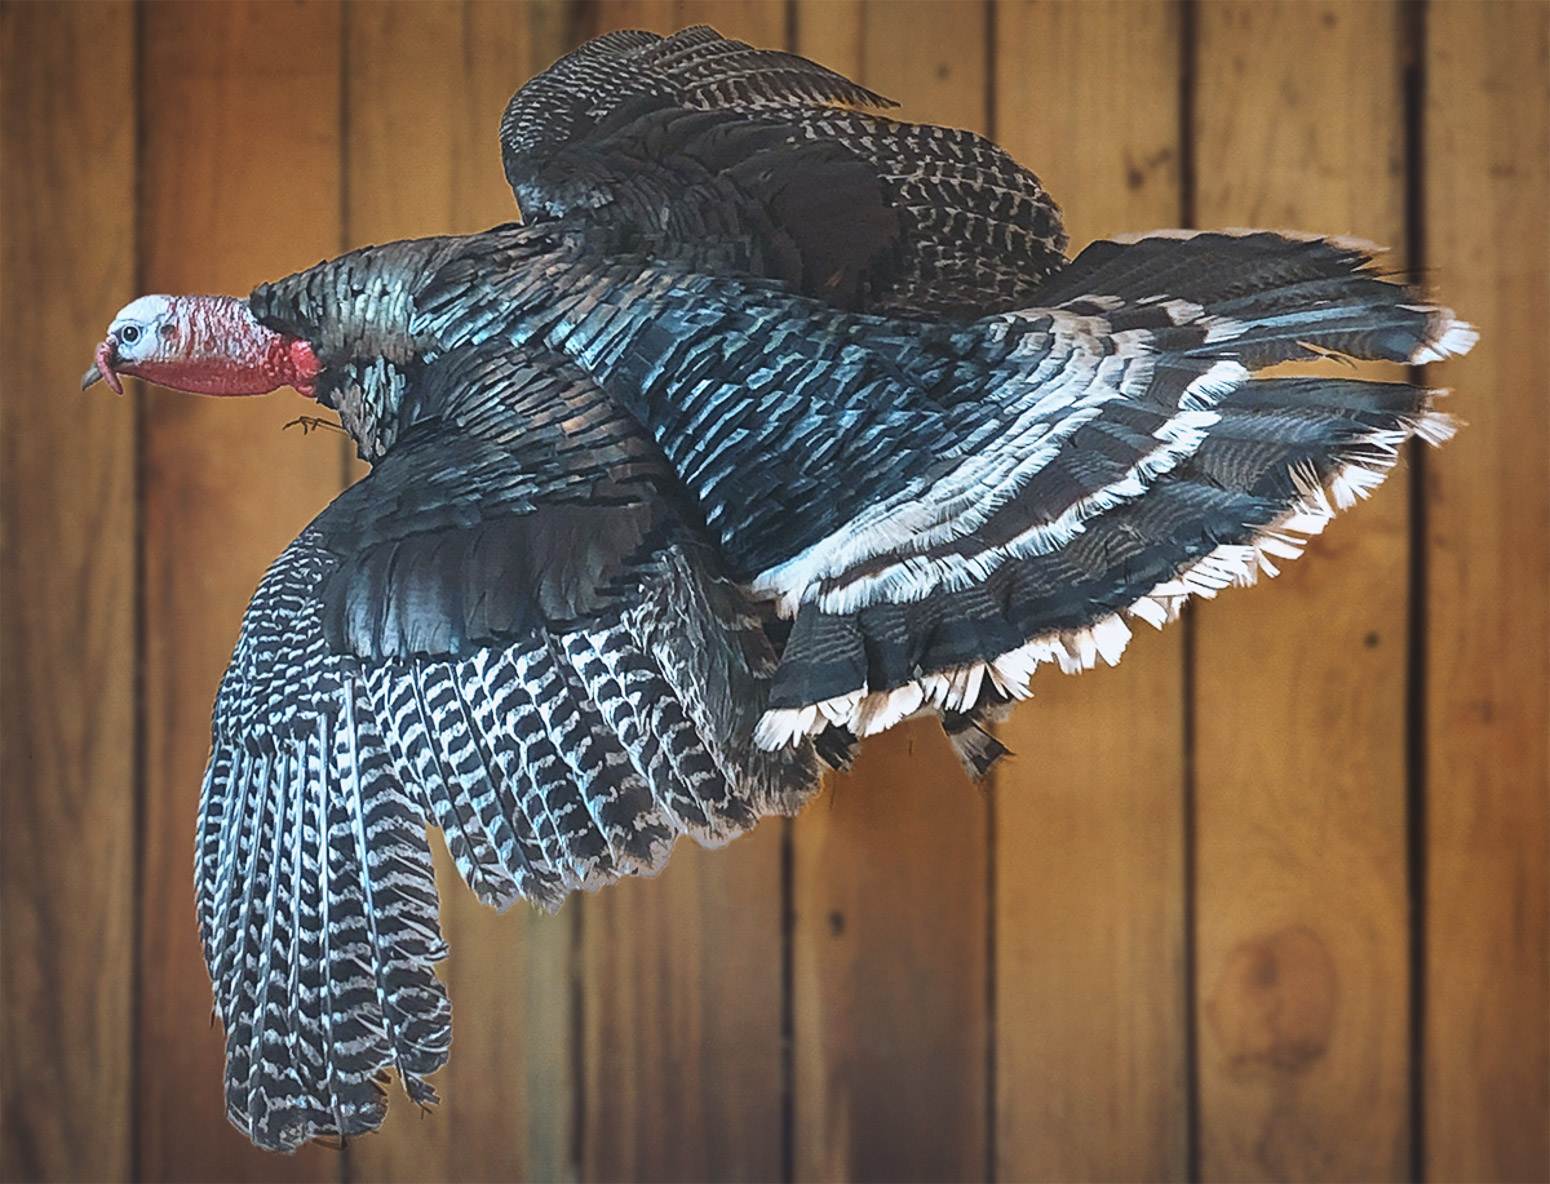 Taxidermy turkey against a wooden wall